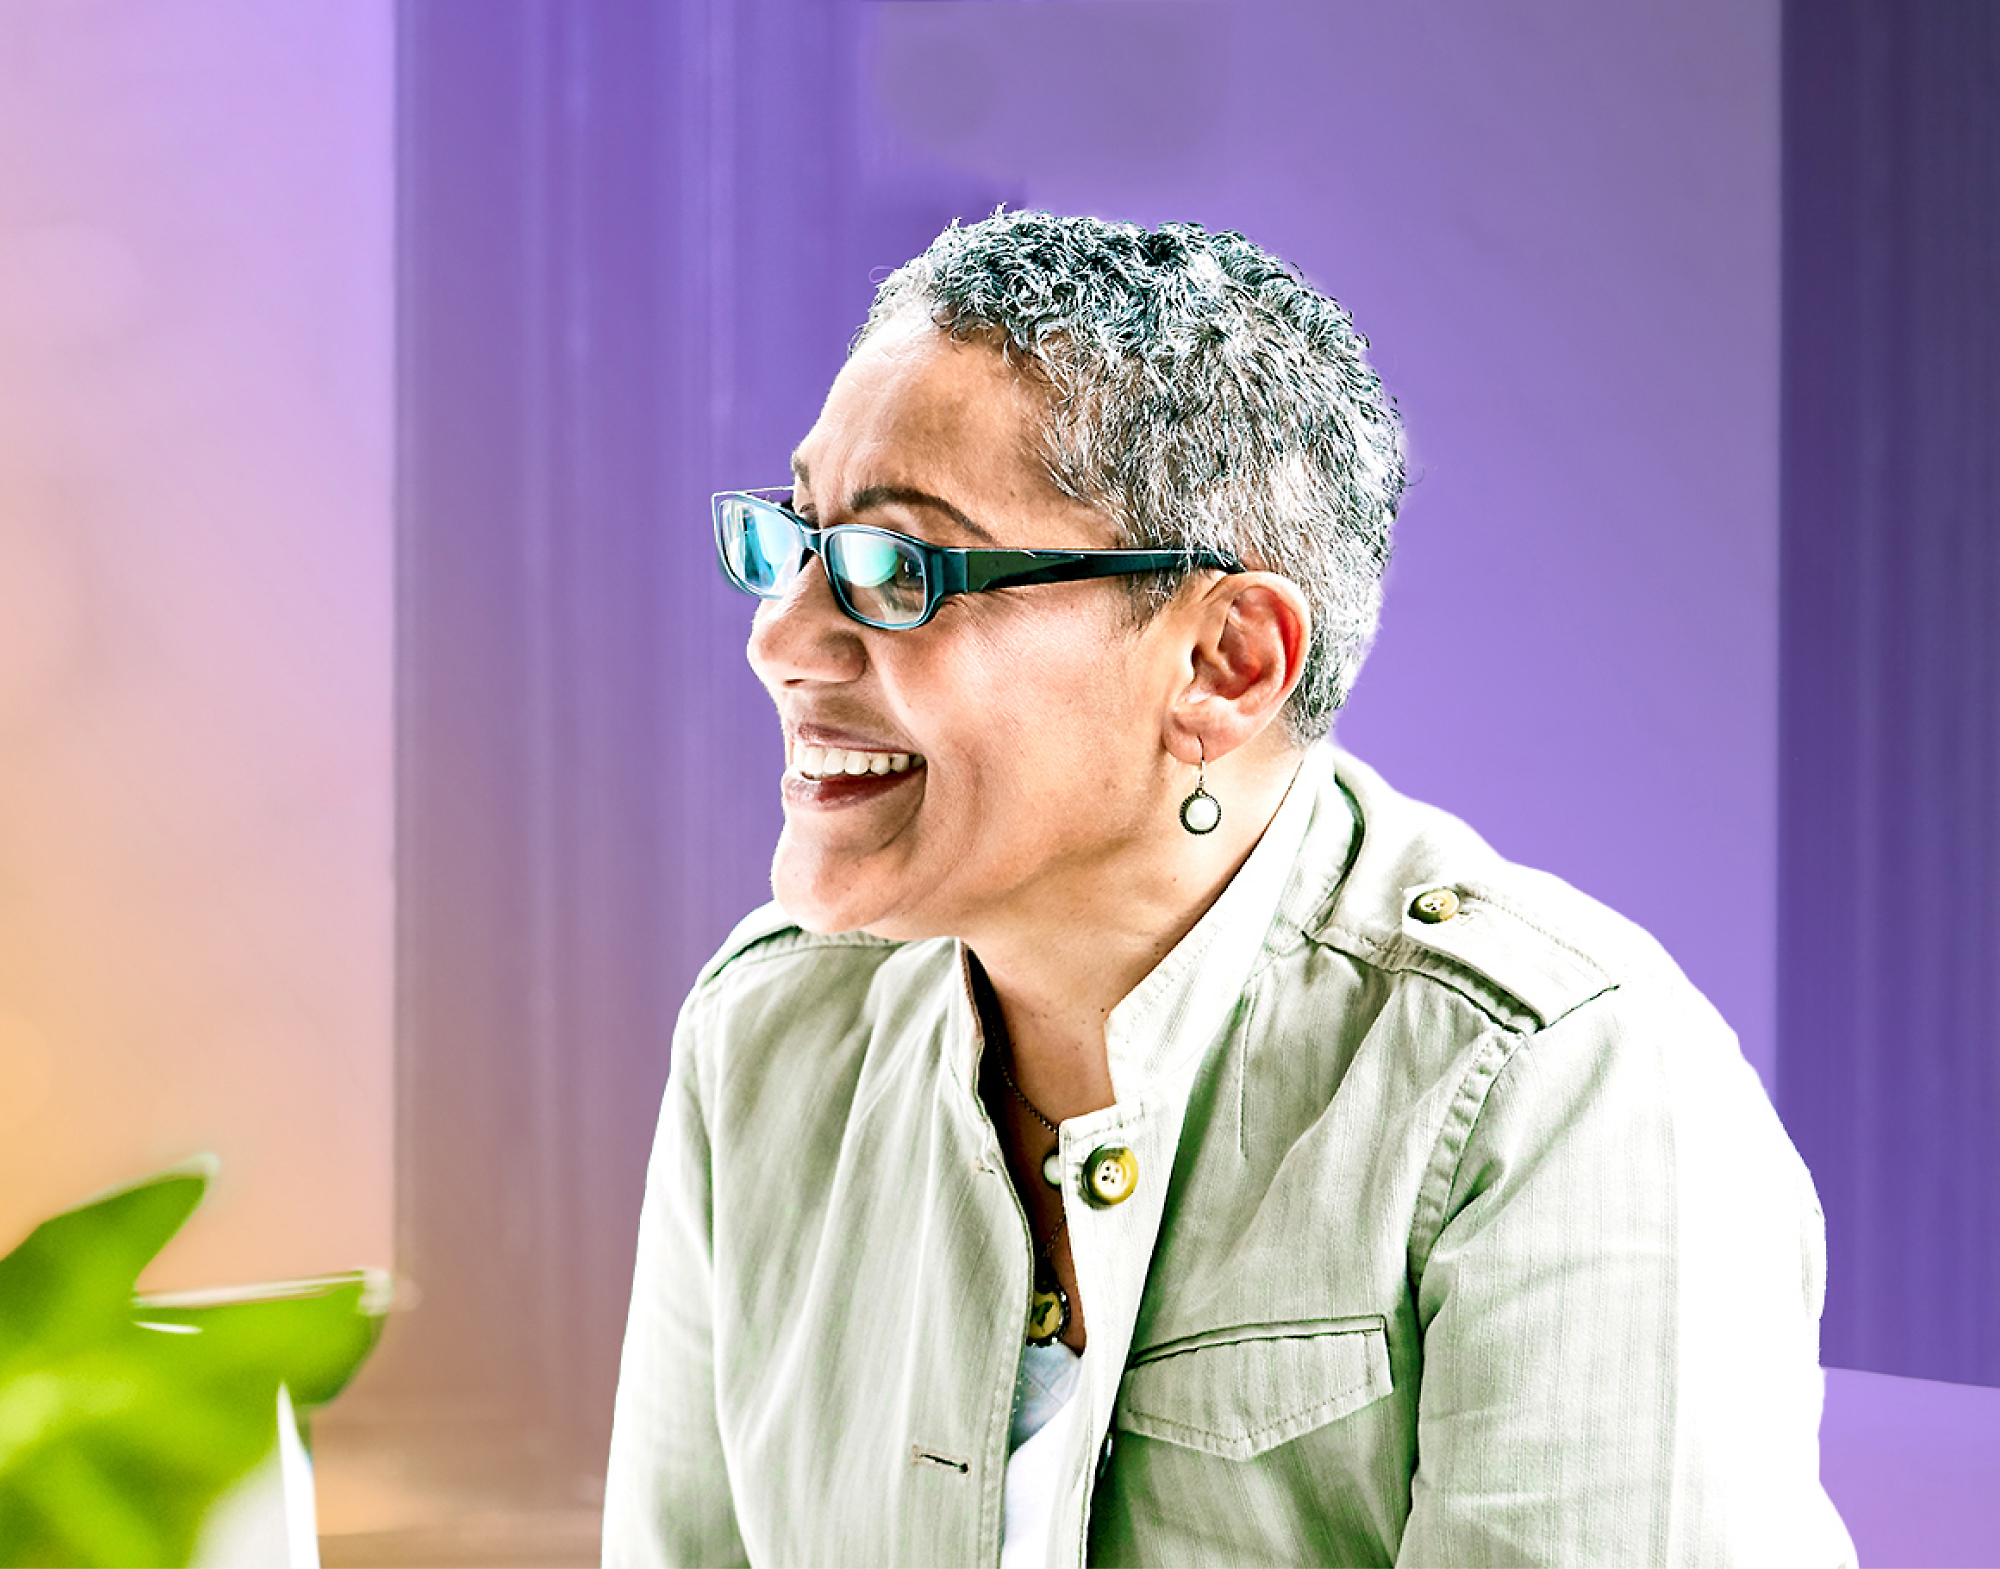 Usmívající se žena ve zralém věku s krátkými šedivými vlasy, v brýlích a světle zeleném saku